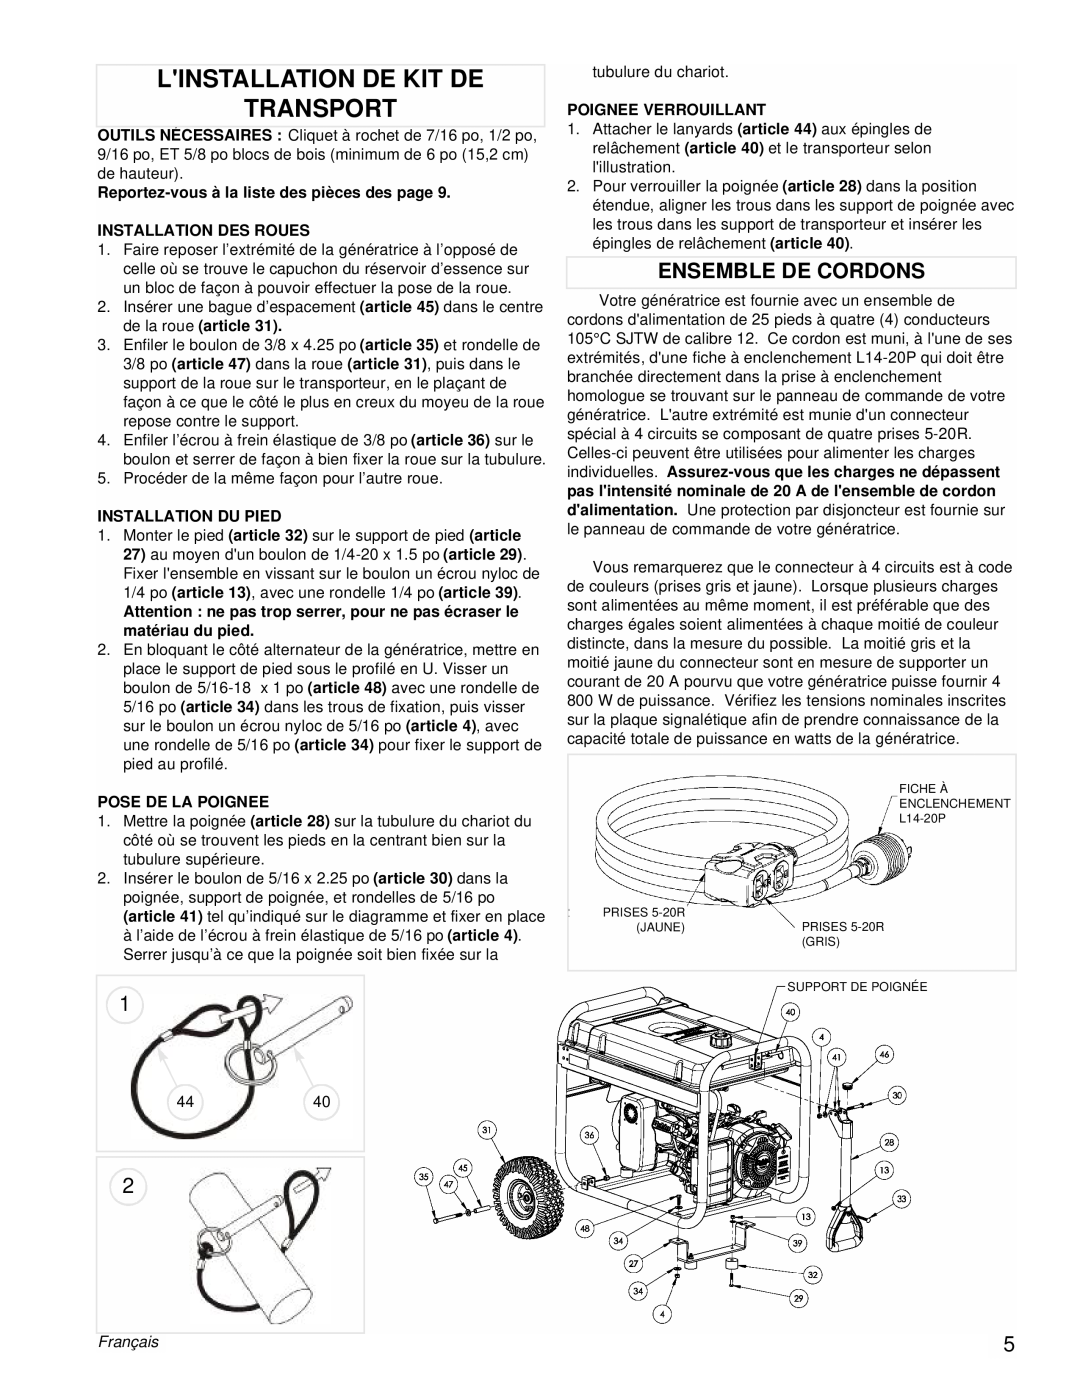 Powermate PM0435255 manual Linstallation De Kit De Transport, Ensemble De Cordons, Français 